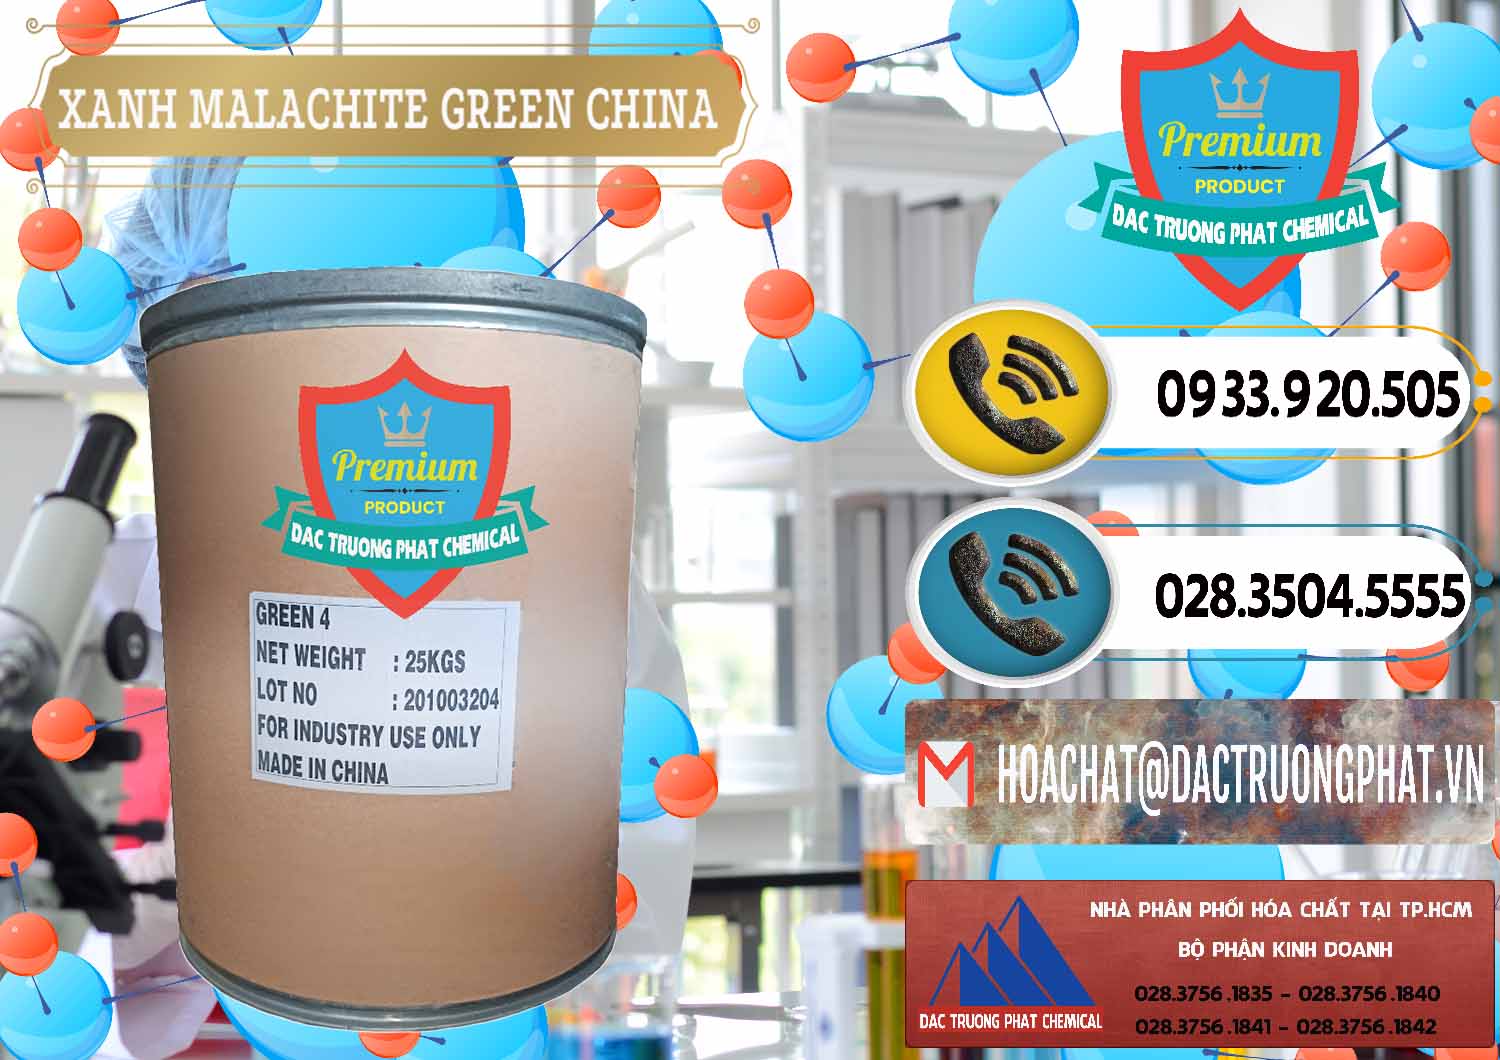 Công ty chuyên bán _ phân phối Xanh Malachite Green Trung Quốc China - 0325 - Công ty nhập khẩu & phân phối hóa chất tại TP.HCM - hoachatdetnhuom.vn